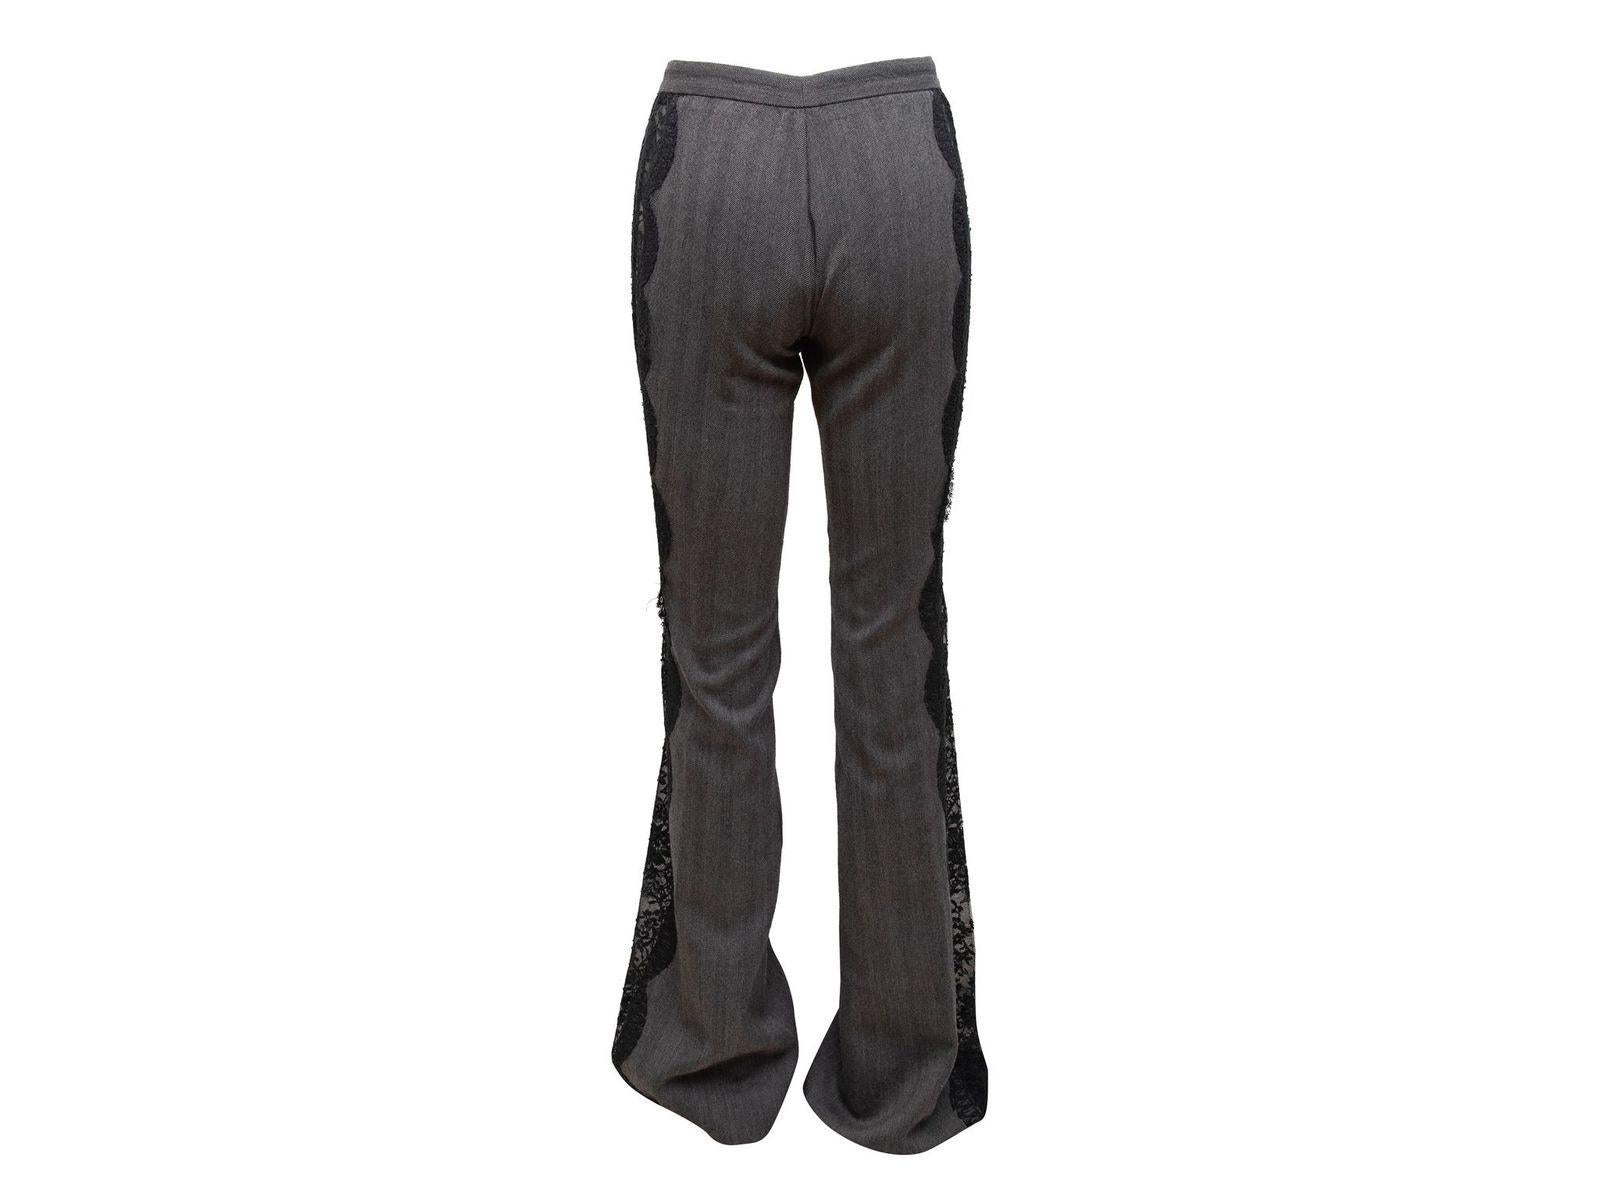 Versace Grey & Black Wool & Lace Herringbone Pants 4